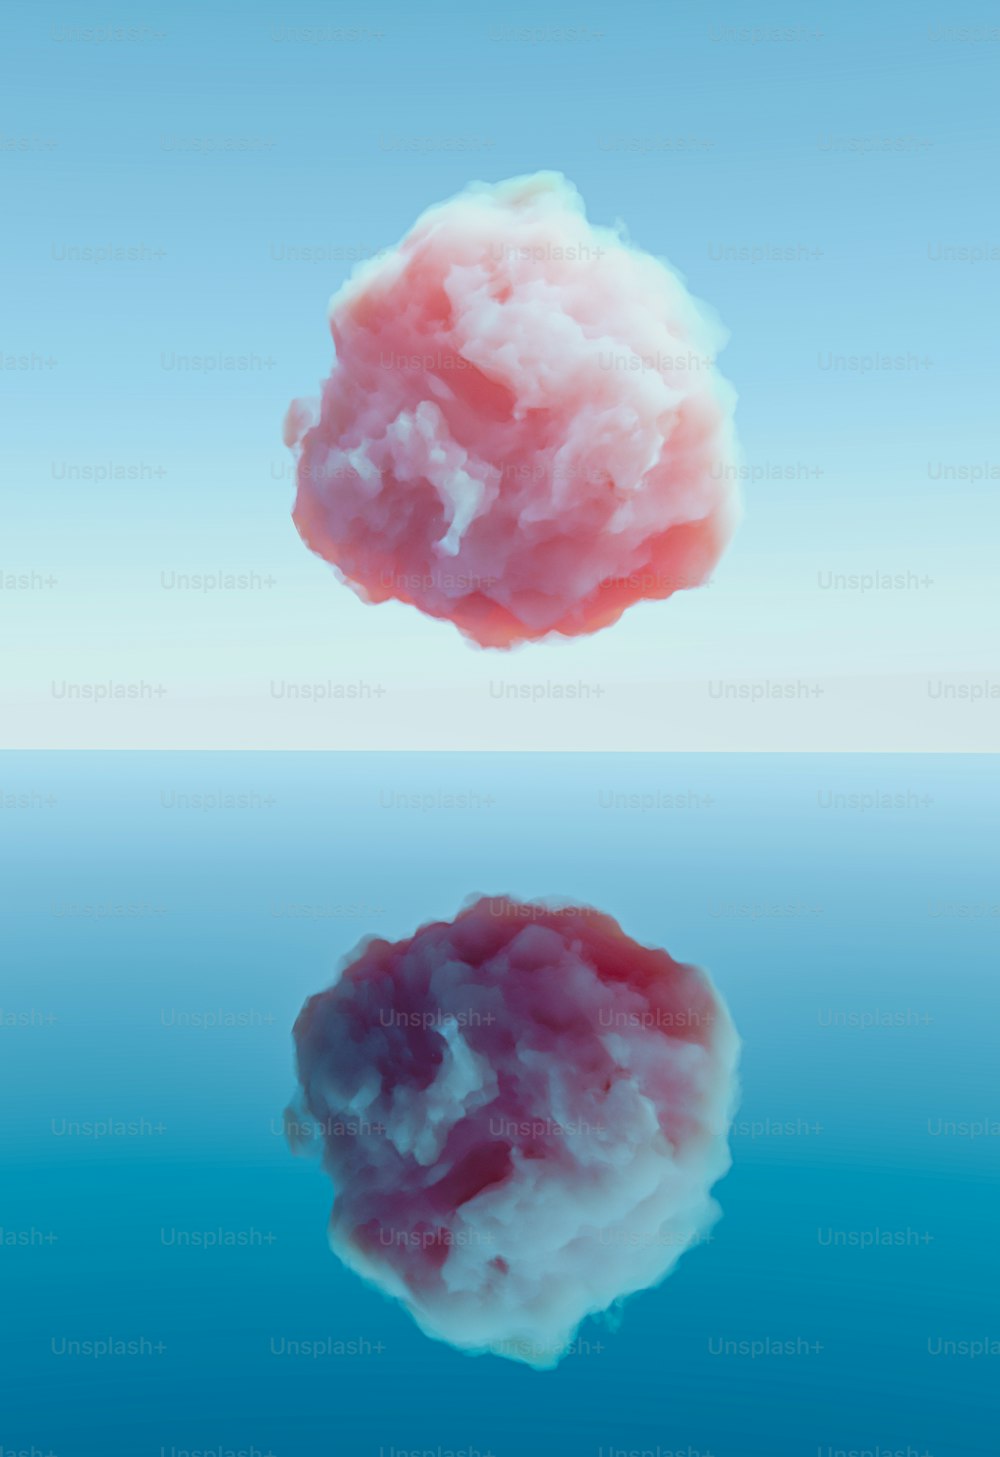 Una nuvola rosa che fluttua nell'aria sopra uno specchio d'acqua